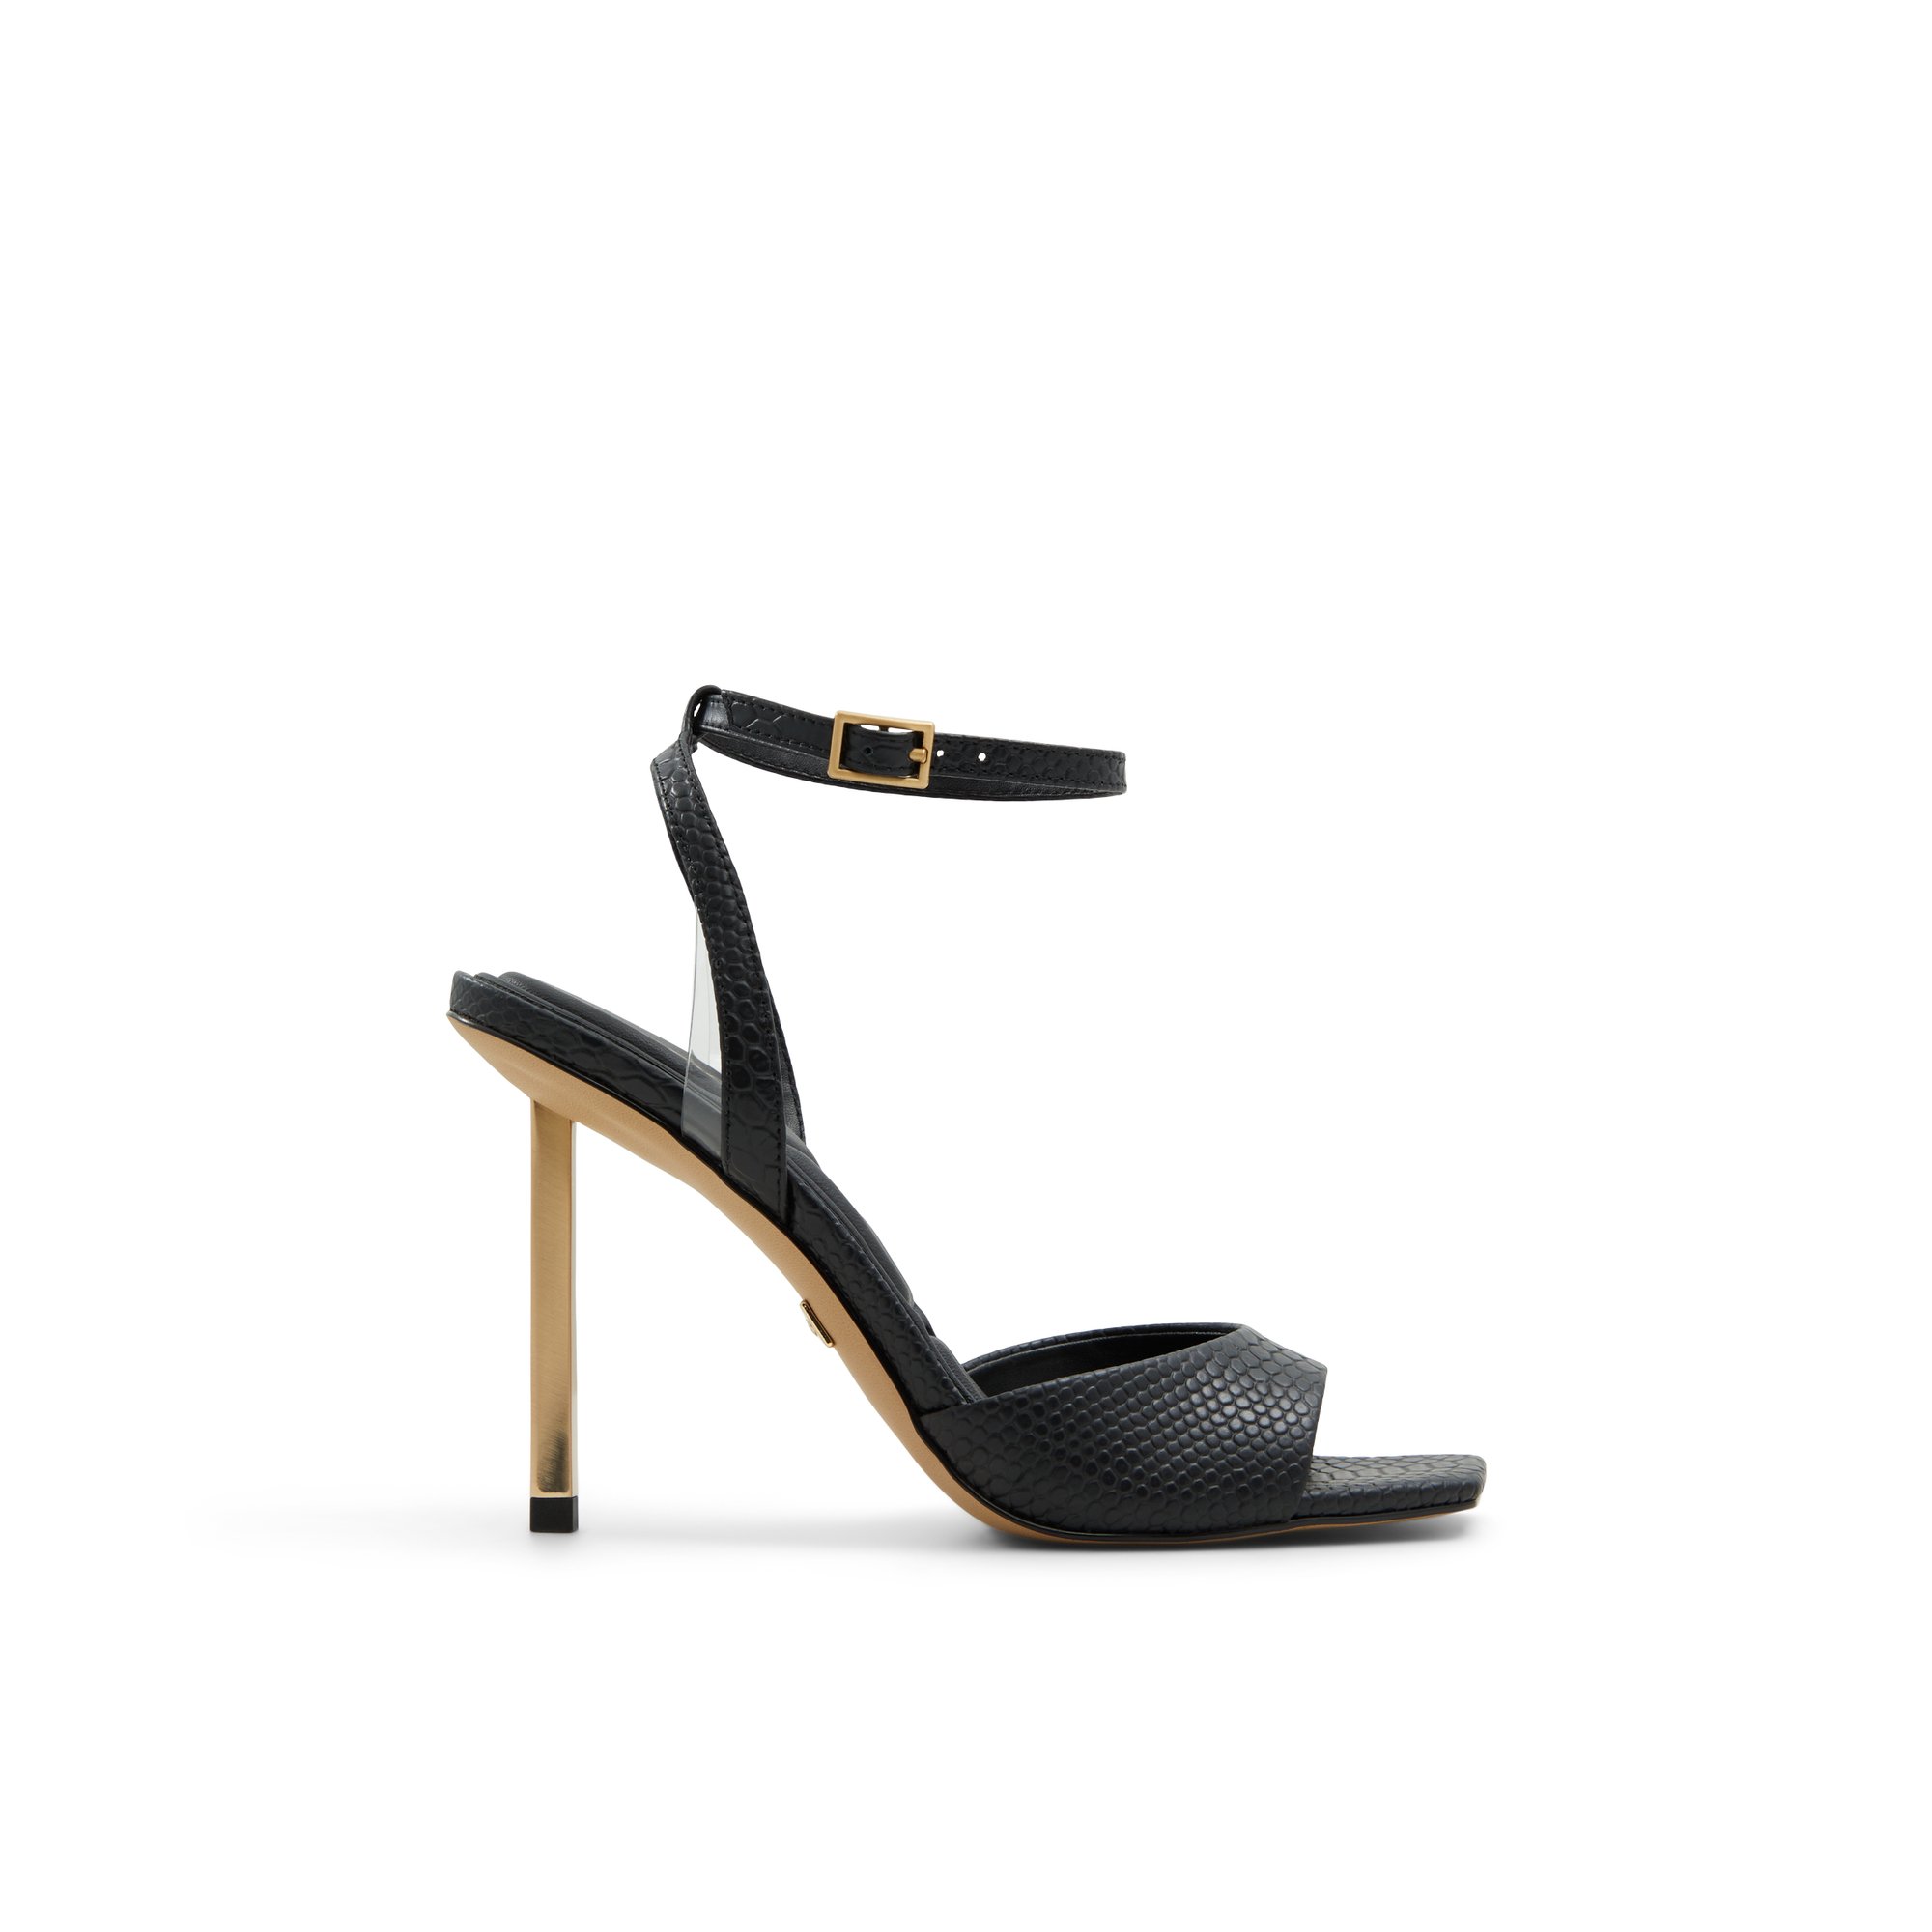 ALDO Lettie - Women's Sandals Strappy - Black